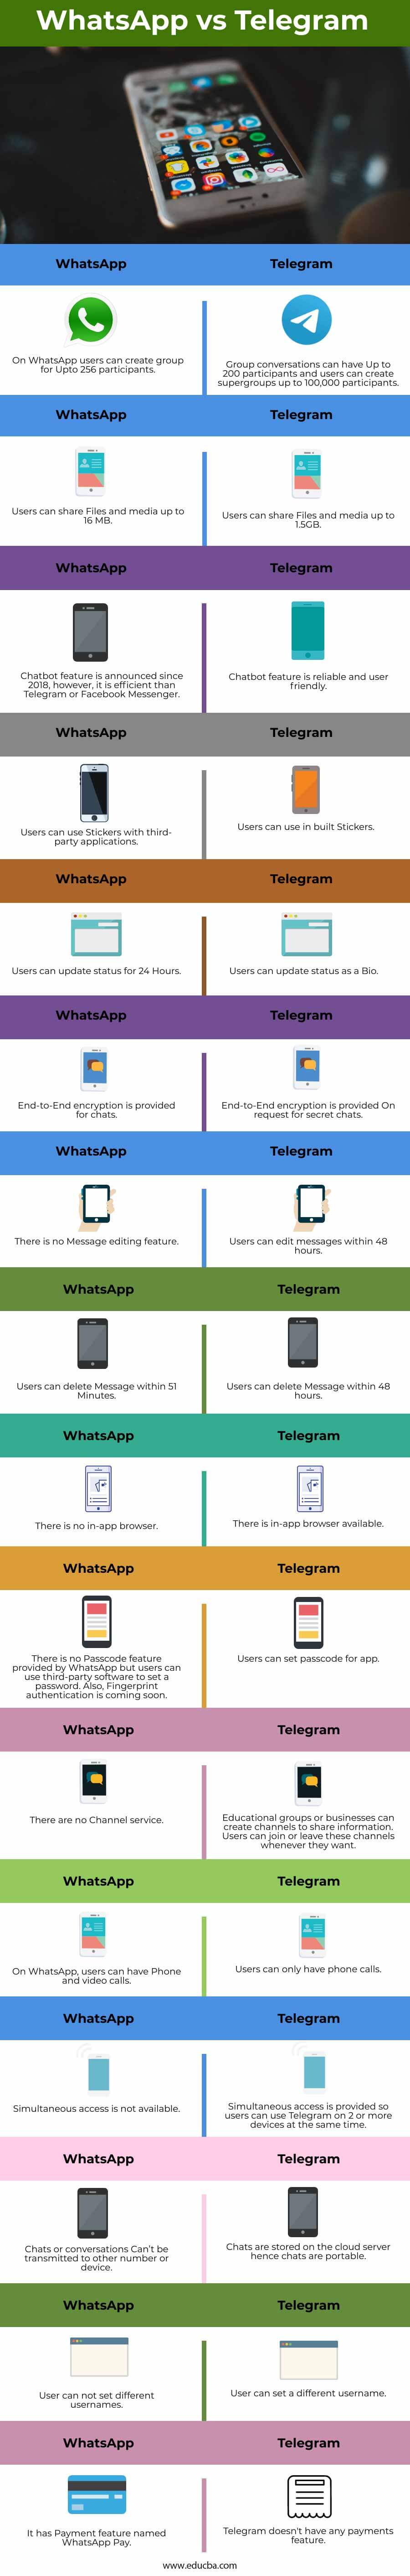 WhatsApp-vs-Telegram-info